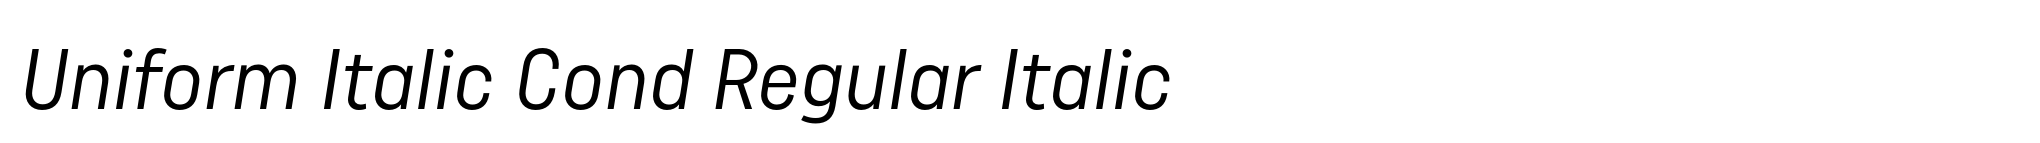 Uniform Italic Cond Regular Italic image